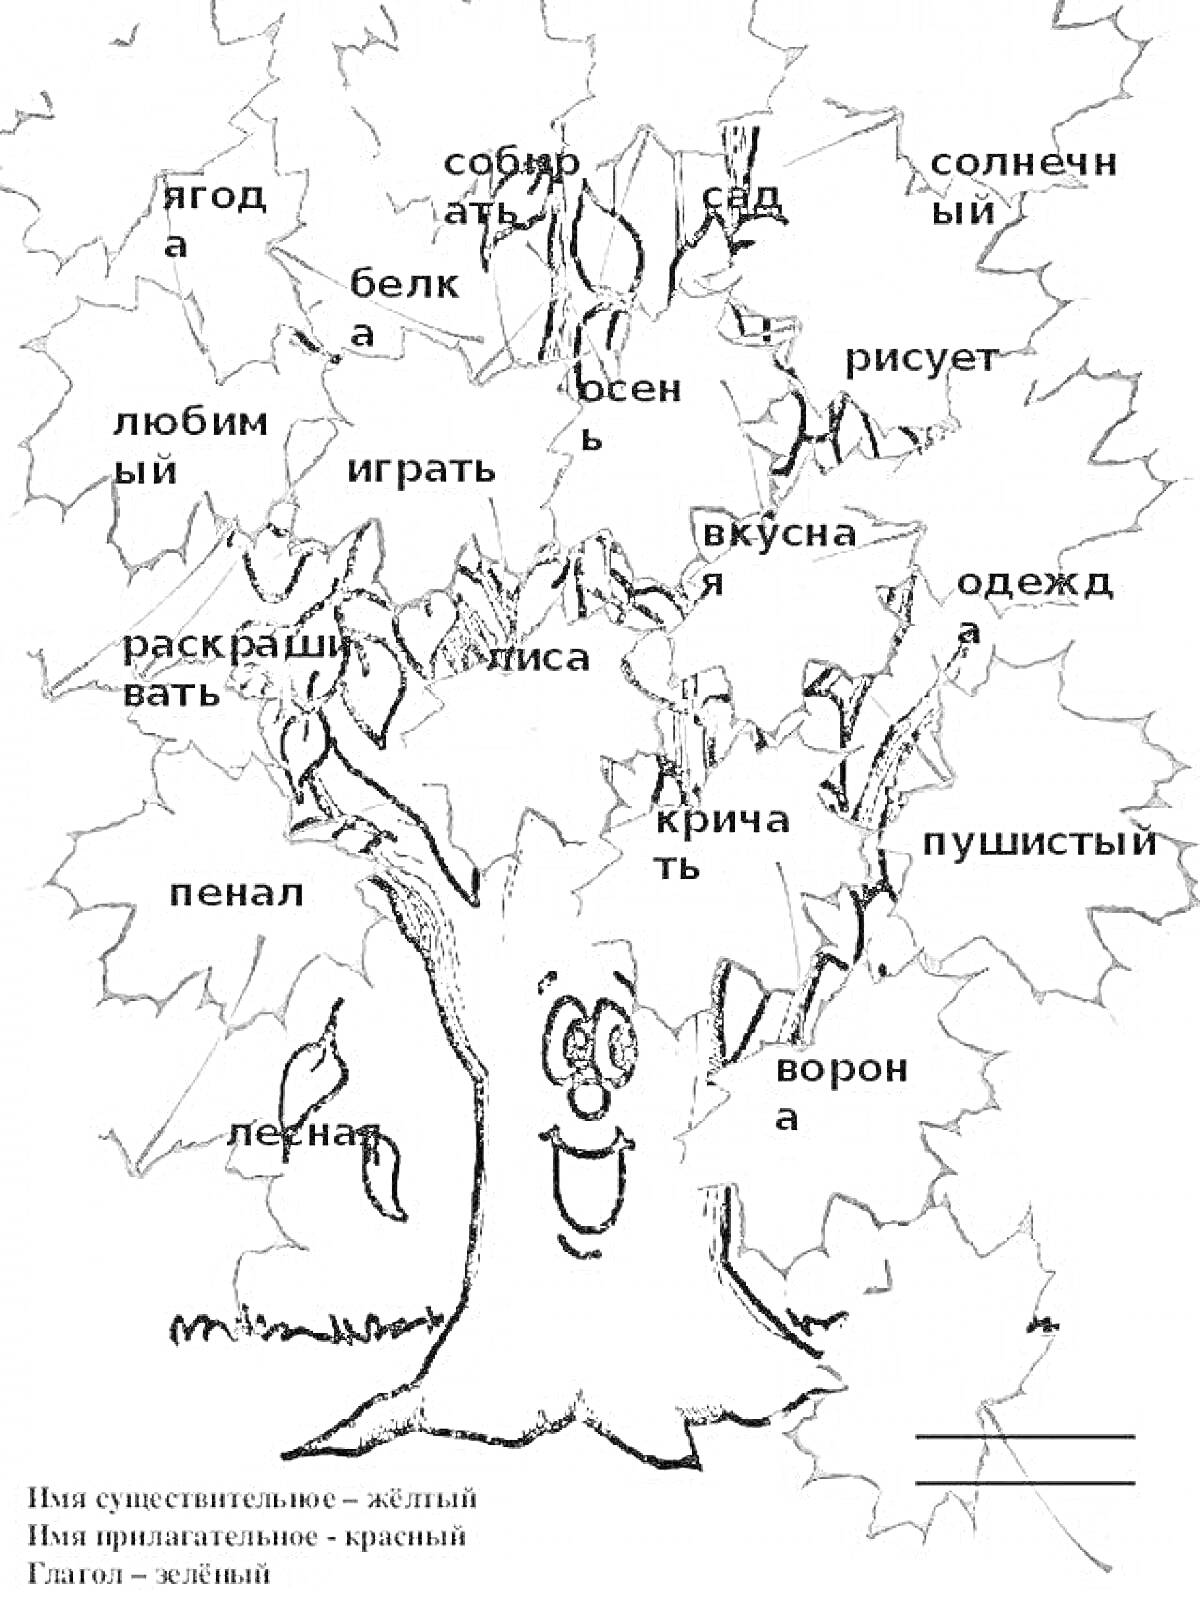 Раскраска Дерево с листочками, содержащими различные части речи (существительные, прилагательные, глаголы) для раскрашивания